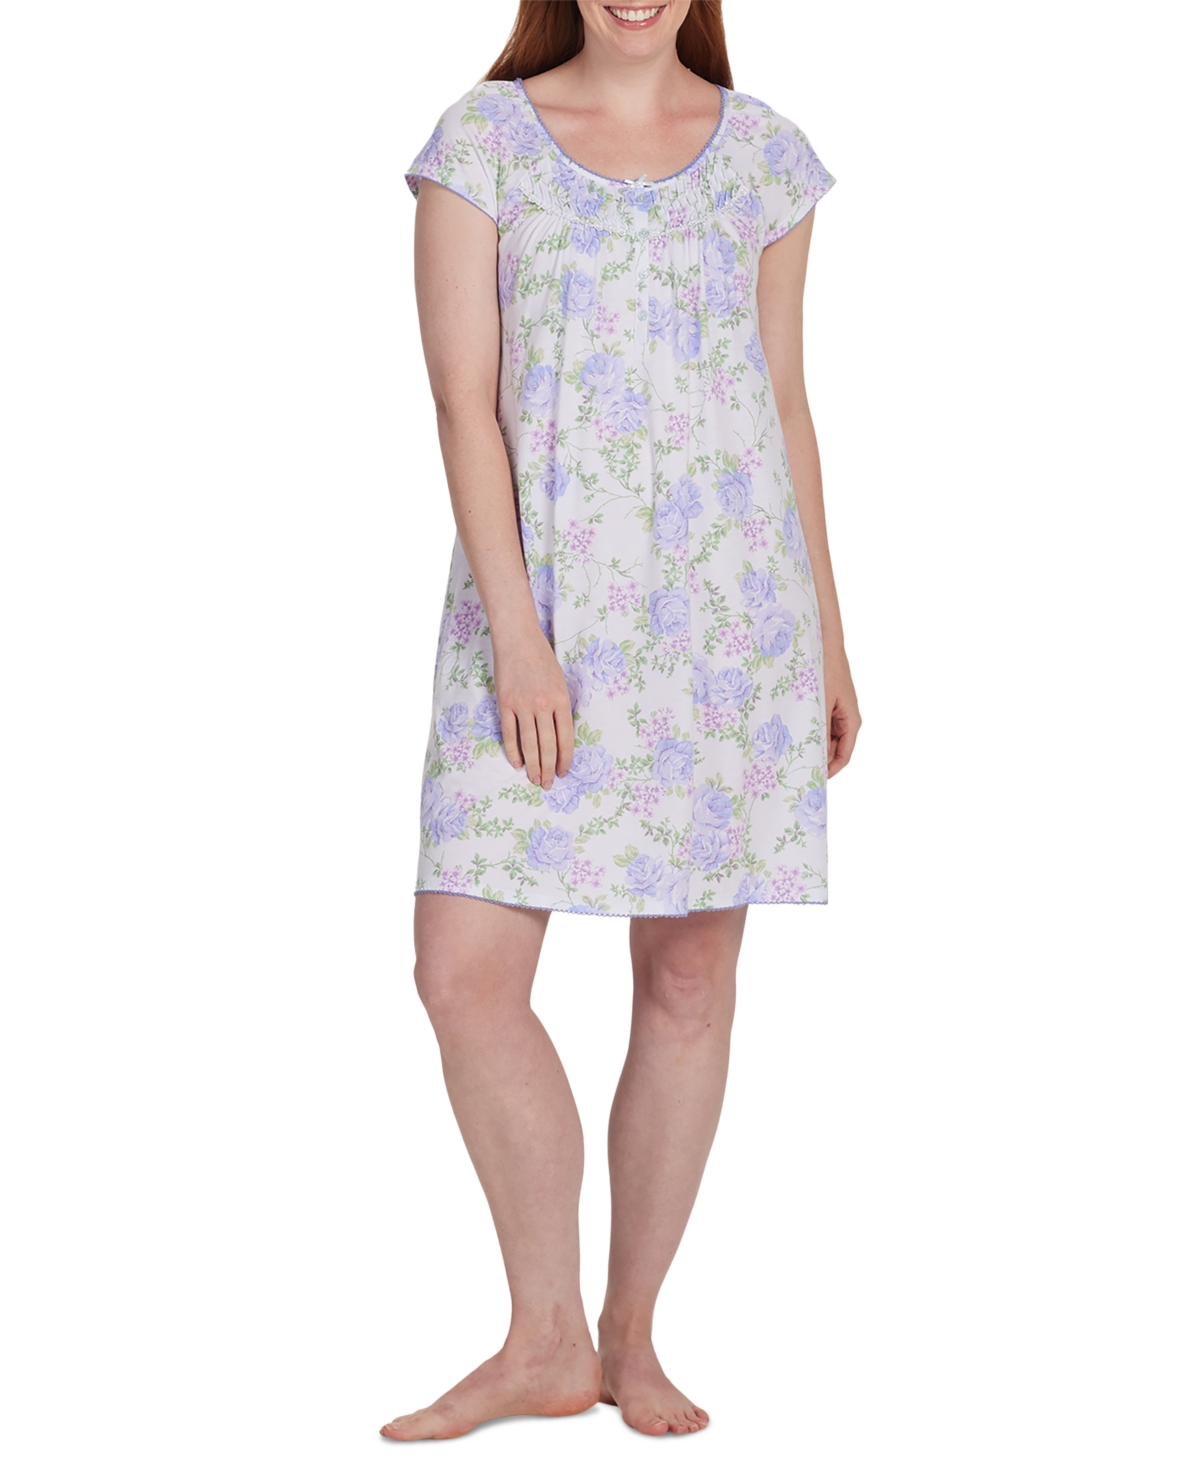 Women's Printed Short-Sleeve Nightgown - Periwinkle Roses On Lt Blu